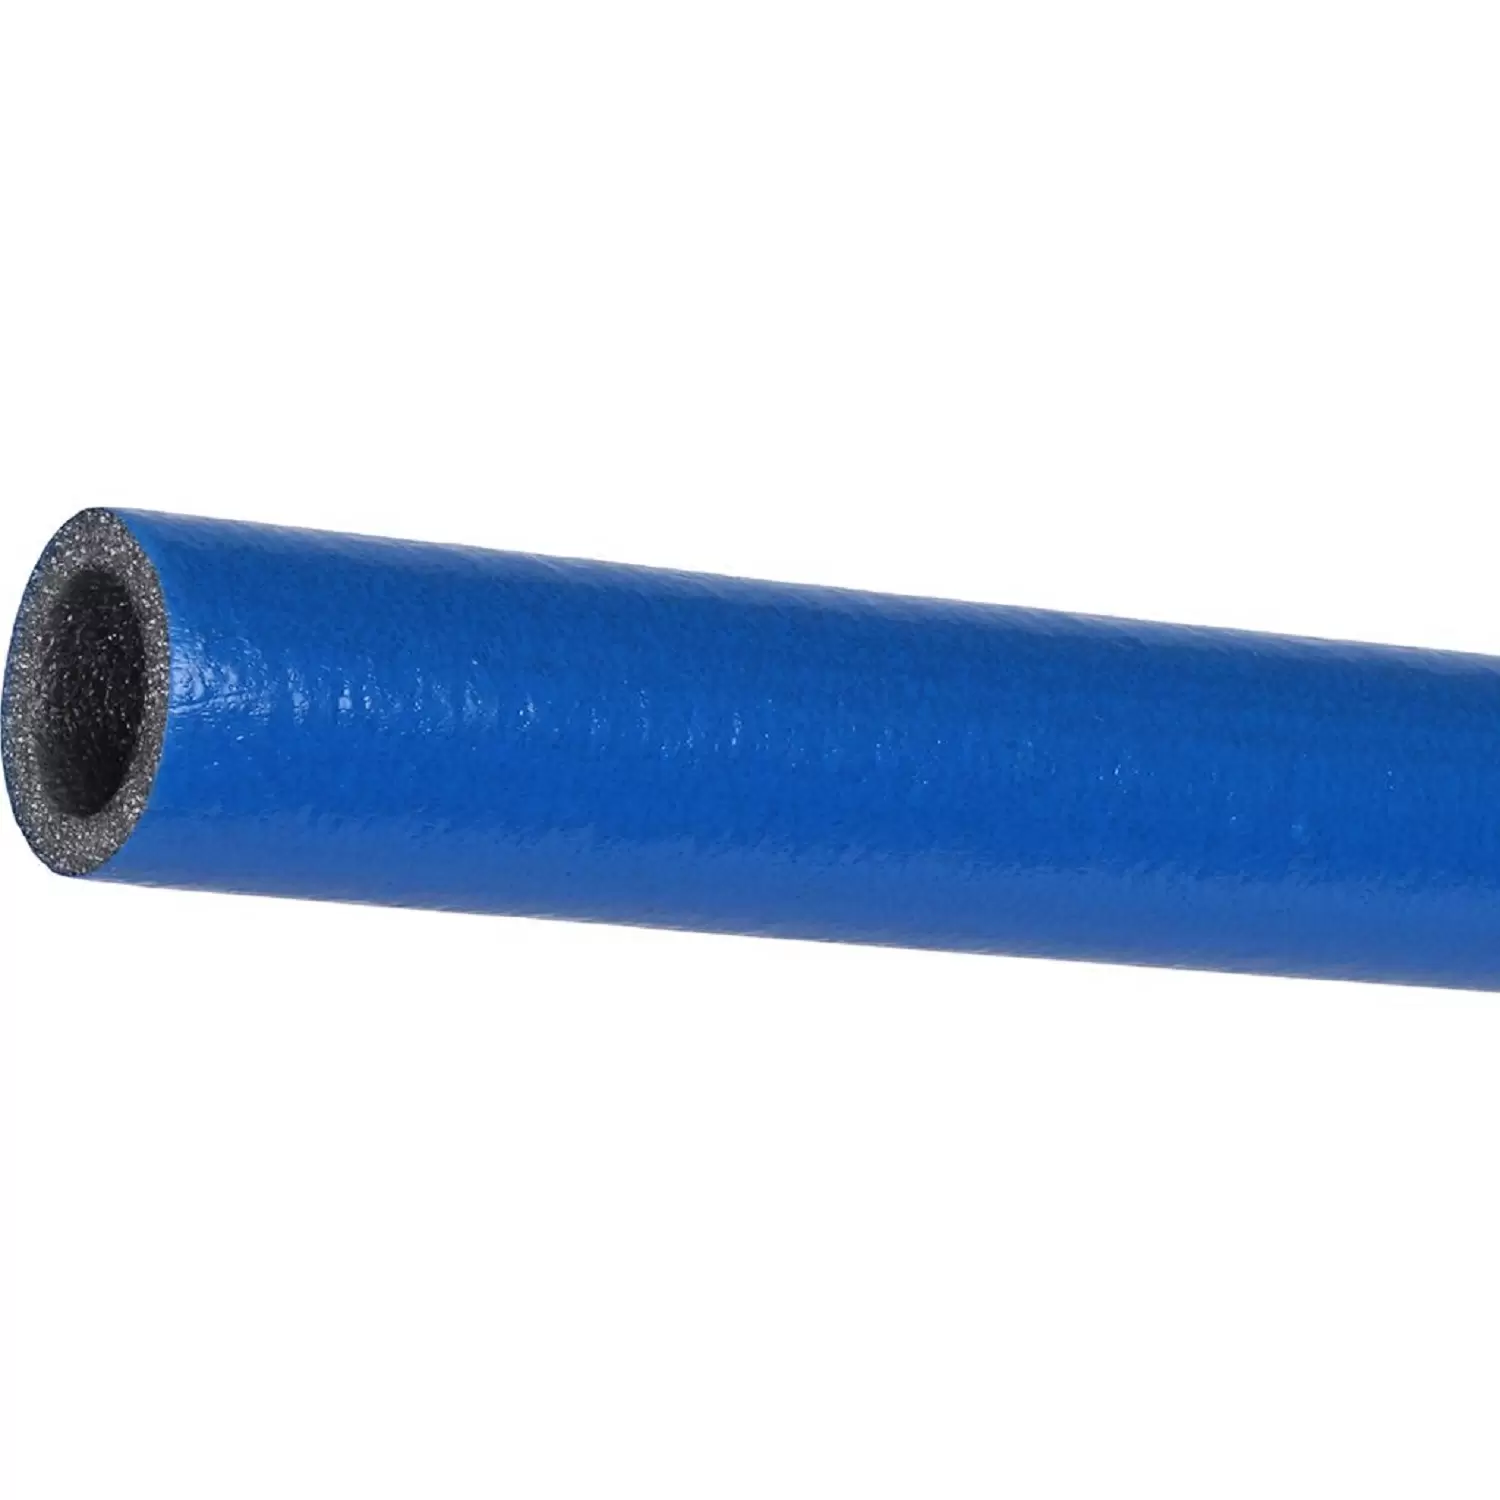 Теплоизоляция Энергофлекс супер протект 35/6 для труб диаметром 32 мм синяя, трубка 2 м